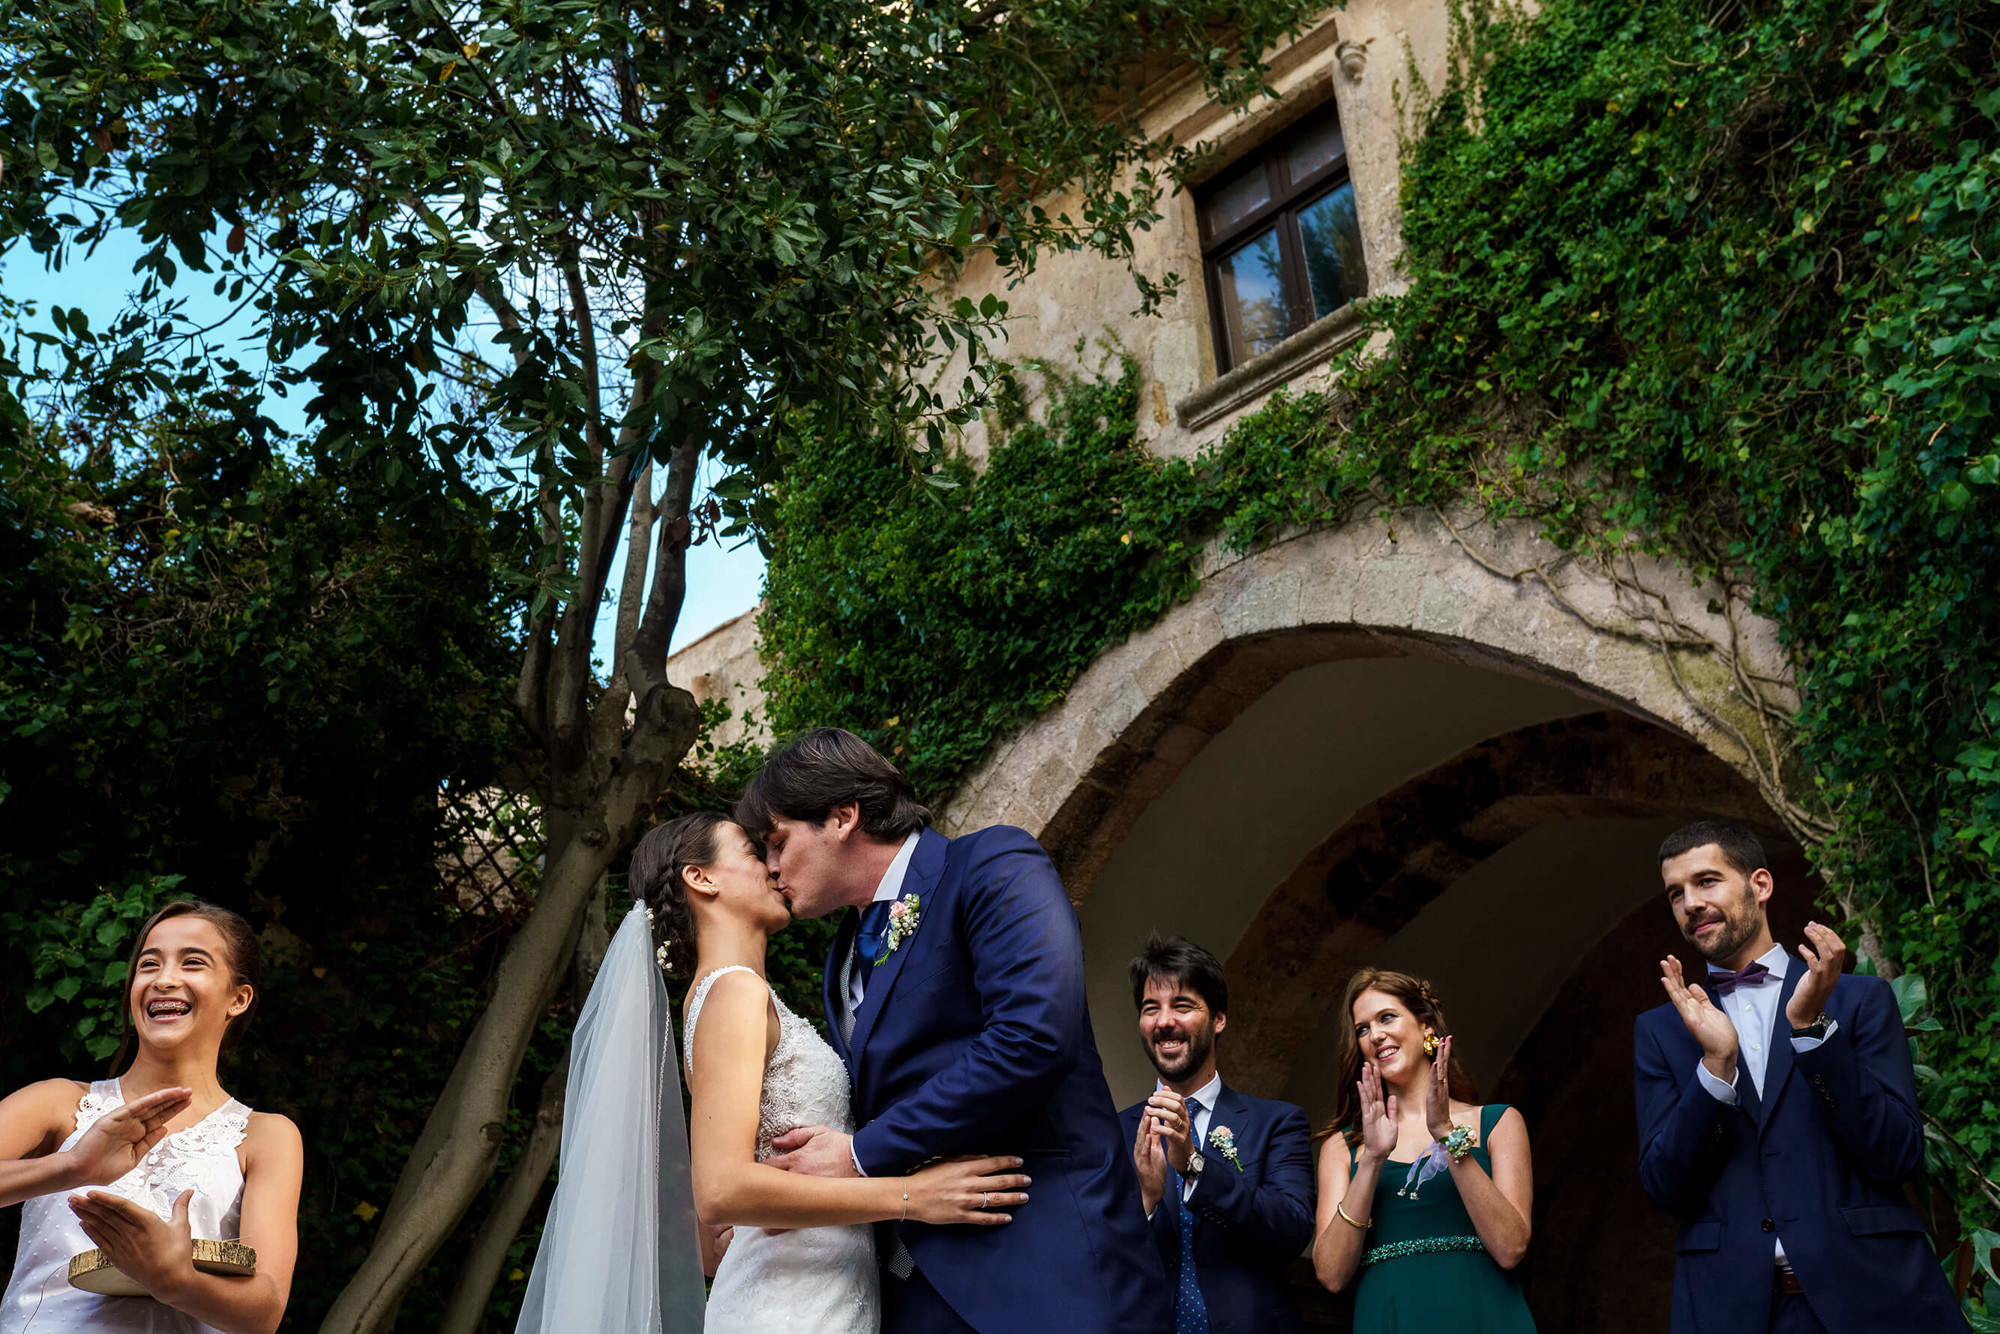 Primer petó dels nuvis a la boda al Castell de Tamarit.